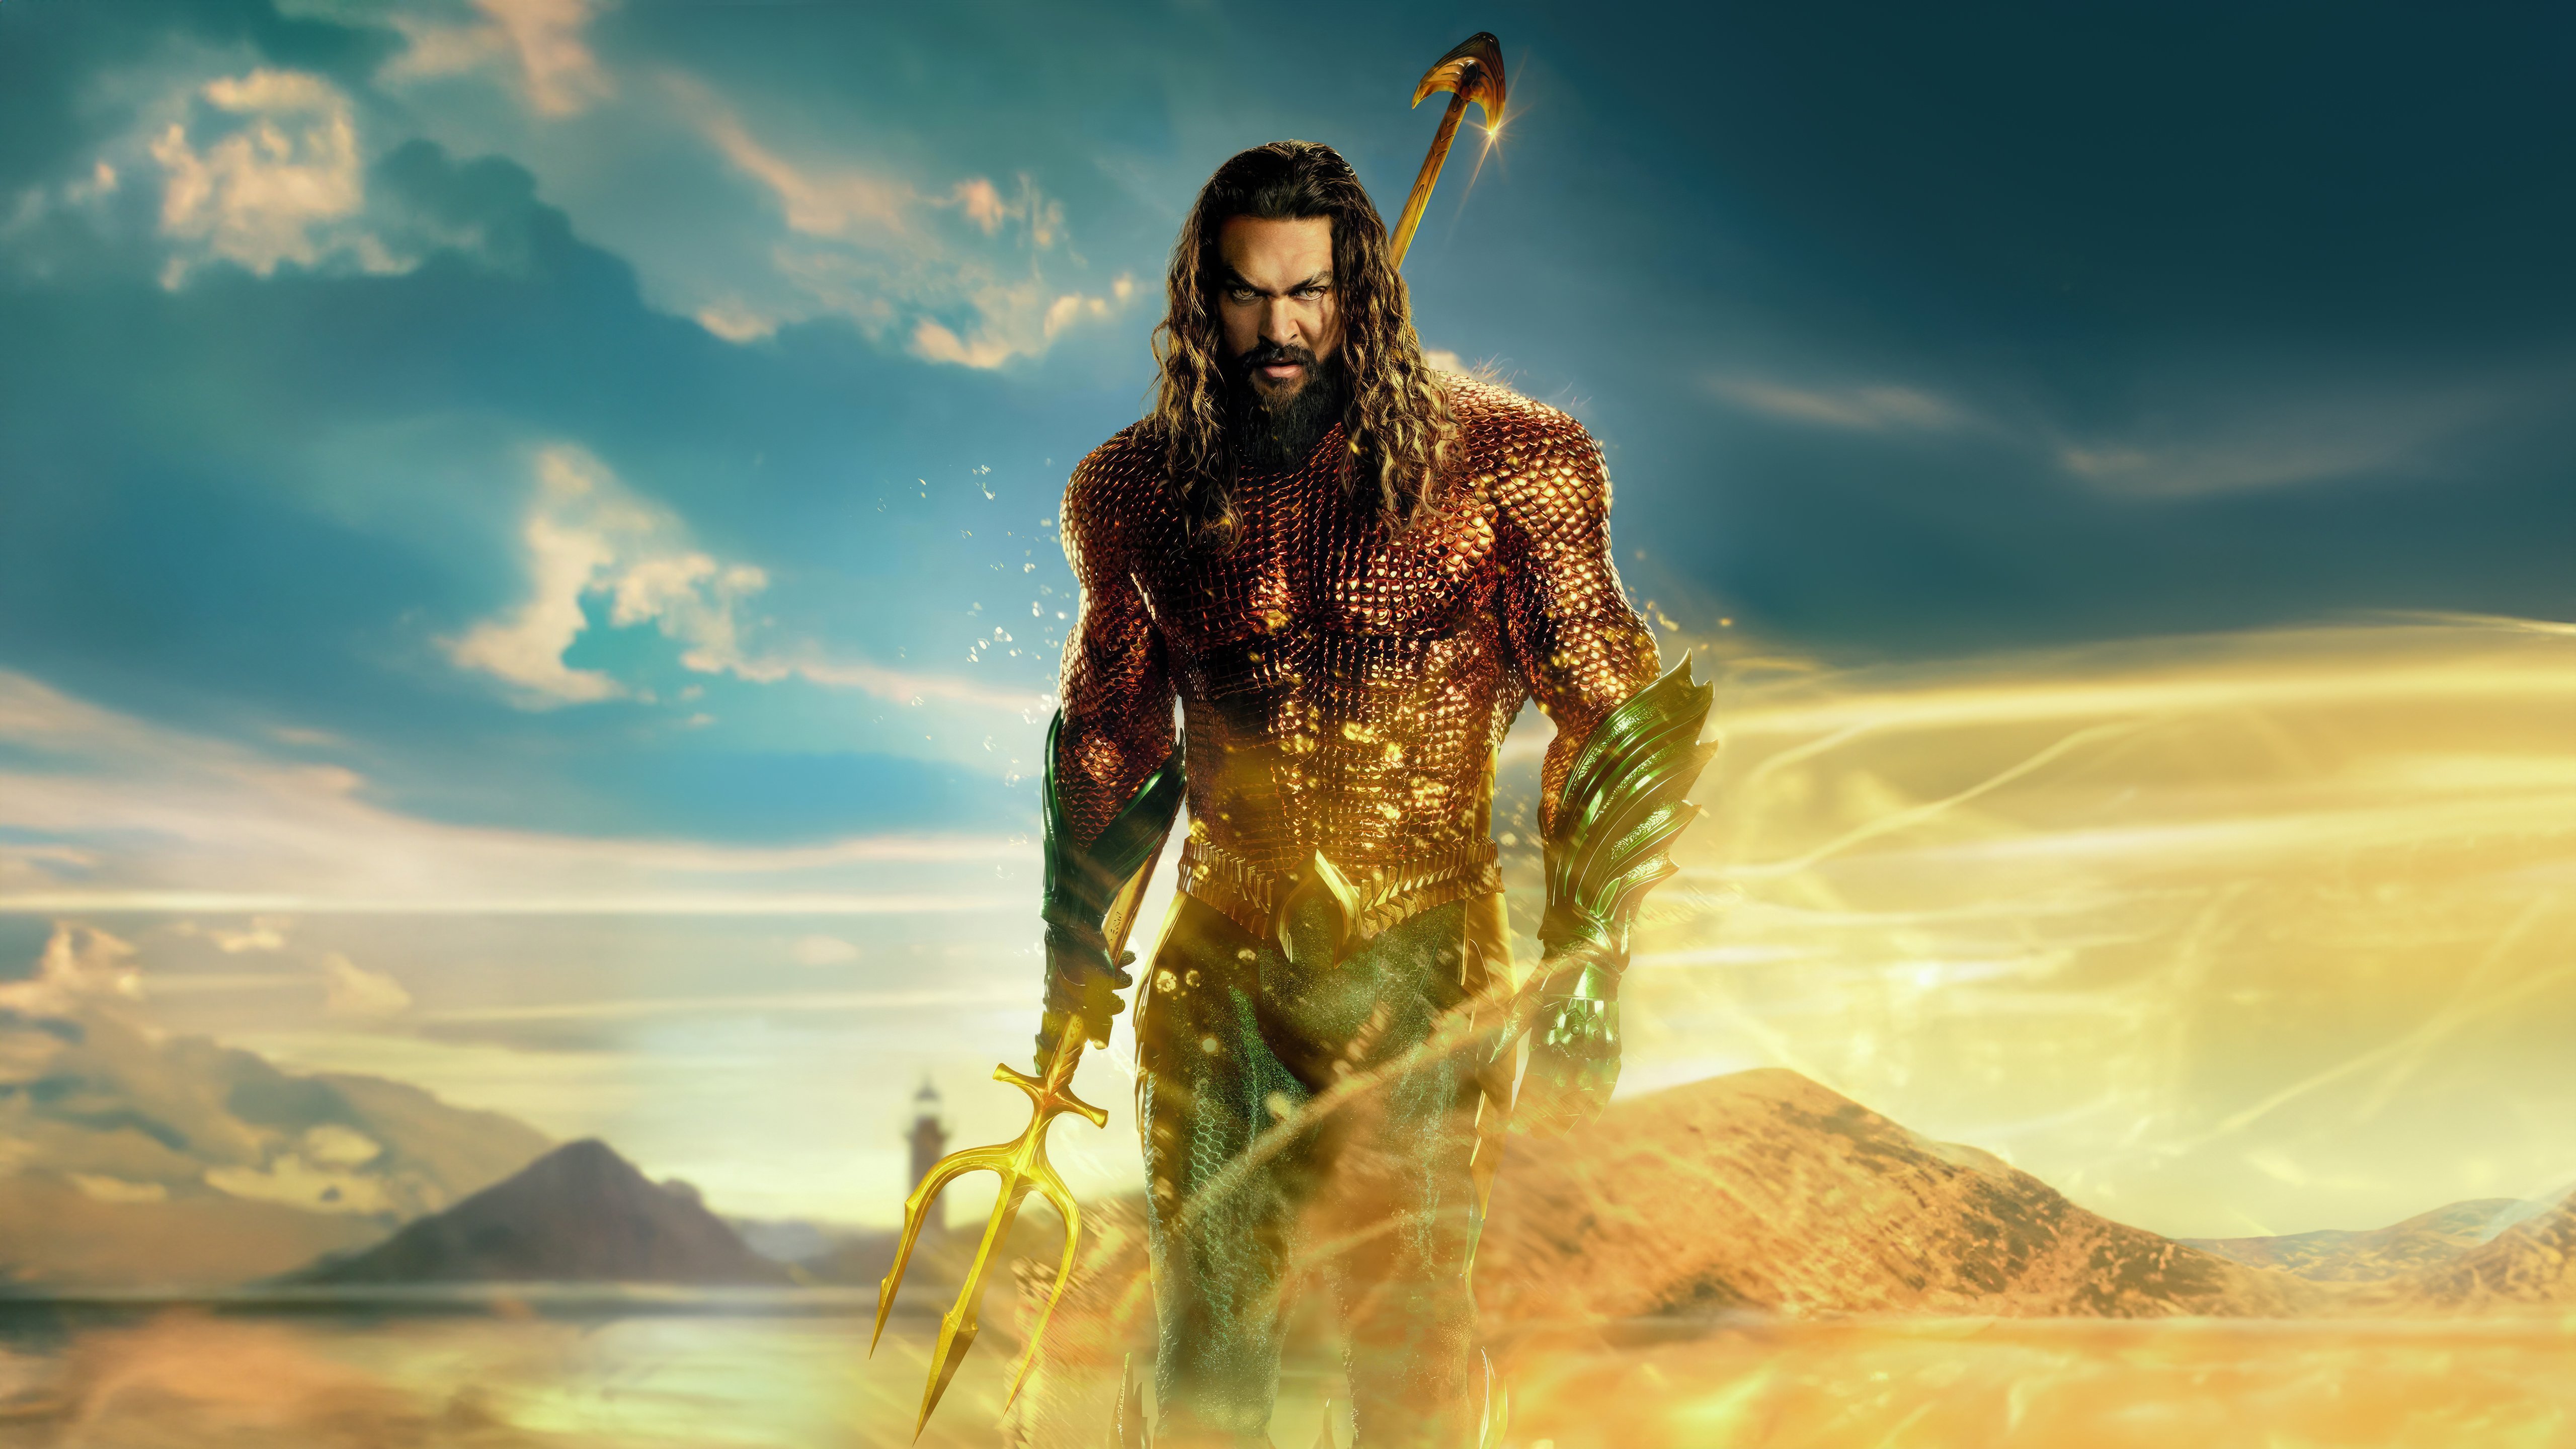 Fondos de pantalla Poster Aquaman and the Lost Kingdom